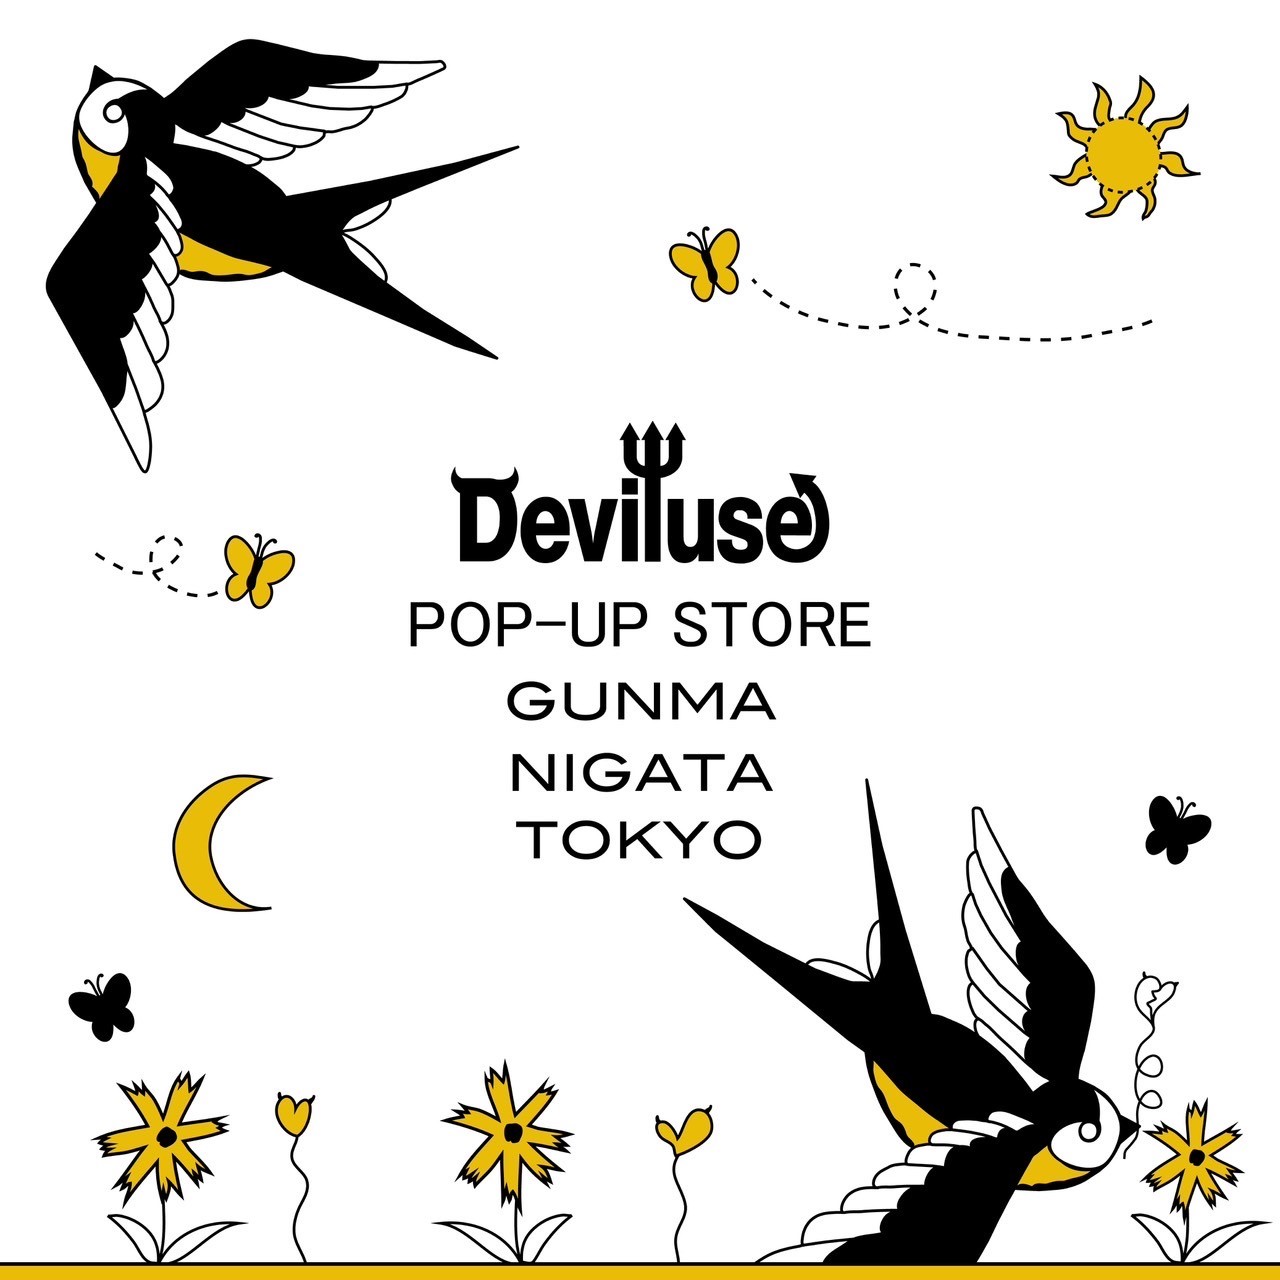 [Deviluse] POP-UP STORE